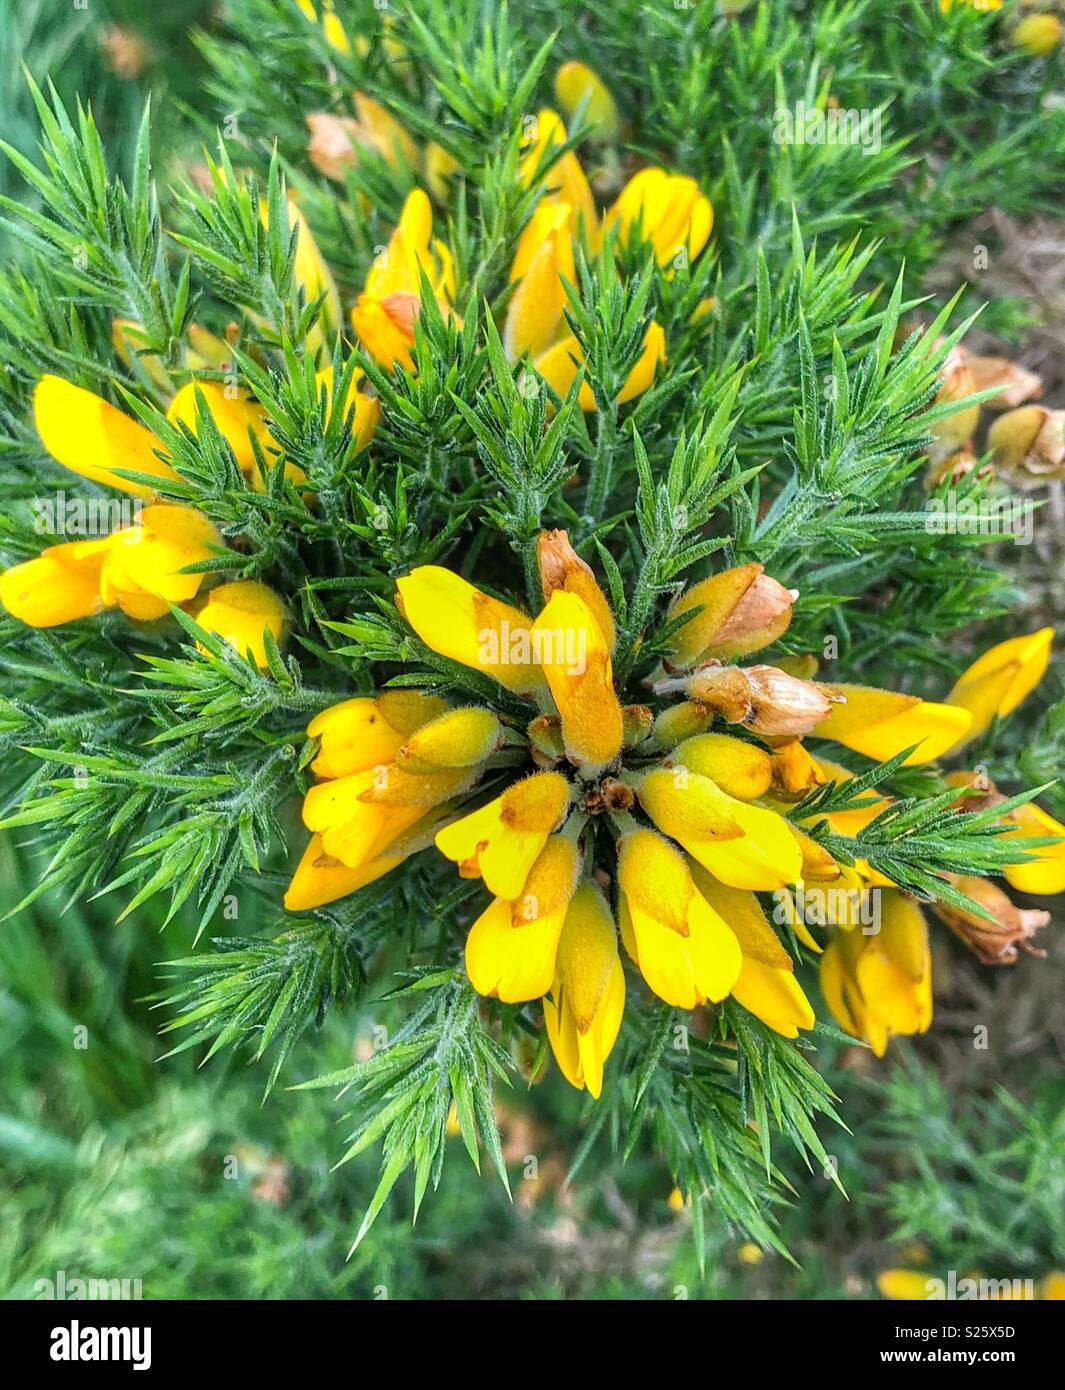 Gorse bush in piena fioritura presi in primavera nello Yorkshire Foto Stock